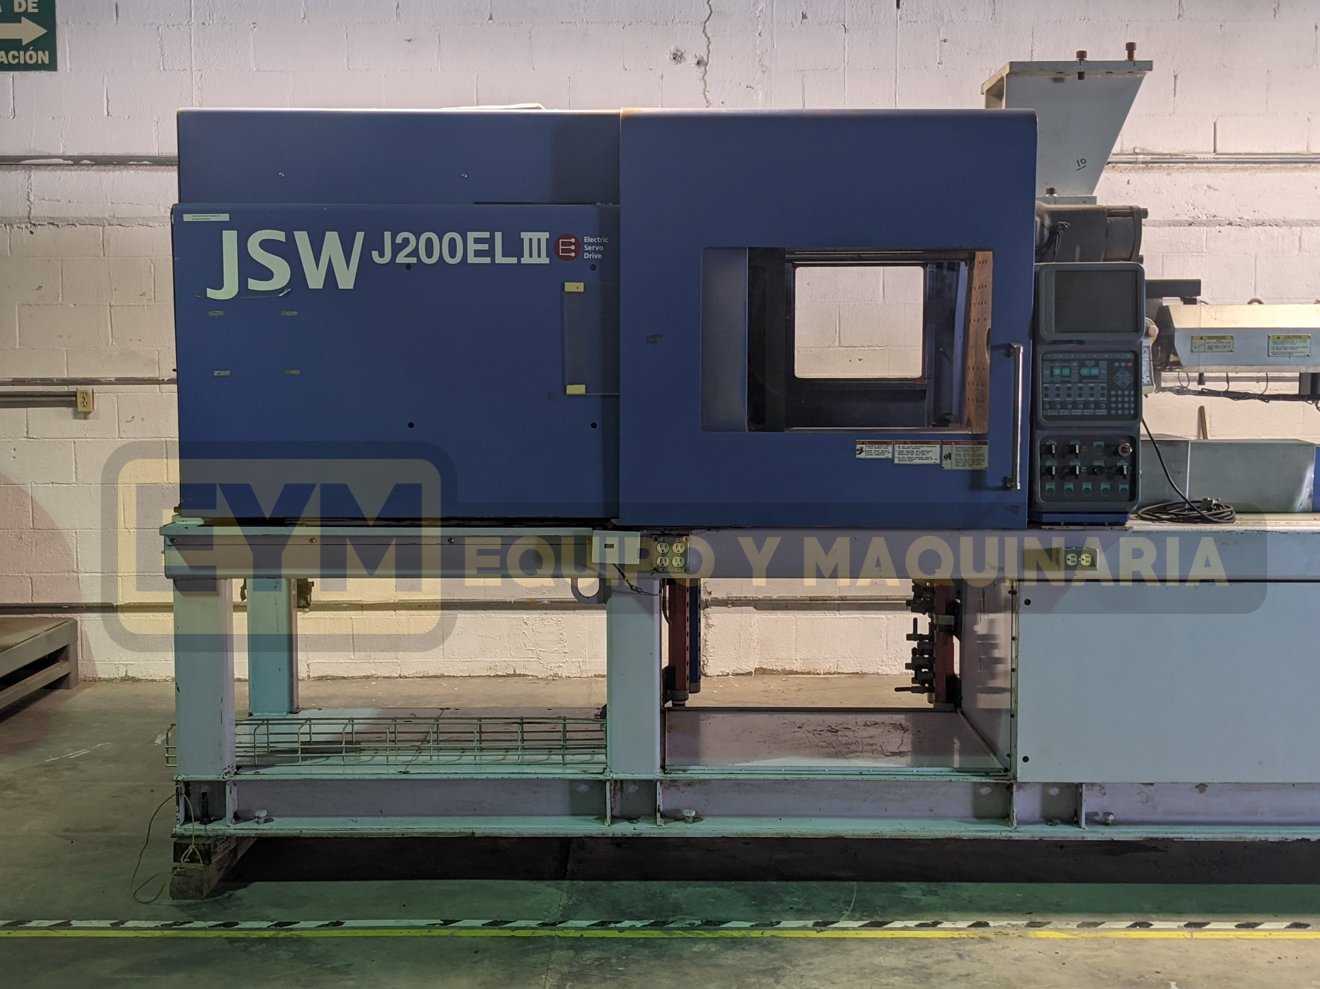 JSW J200 EL III Máquina de Inyección.